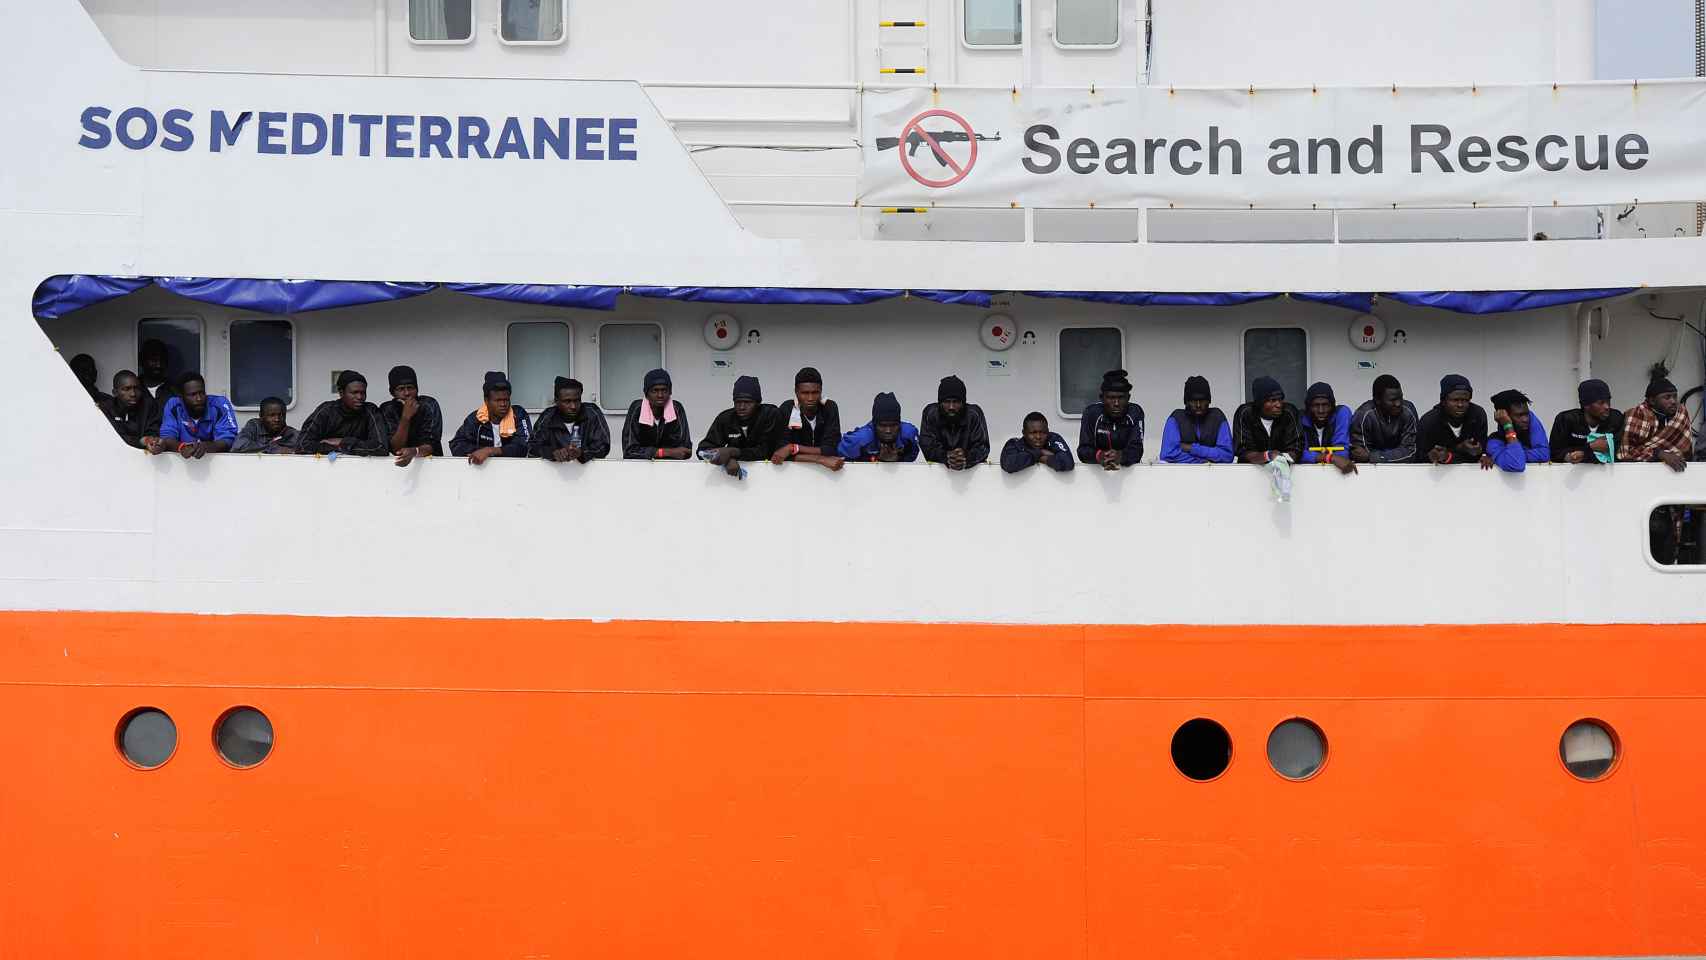 El barco Aquarius, con 629 migrantes a bordo.